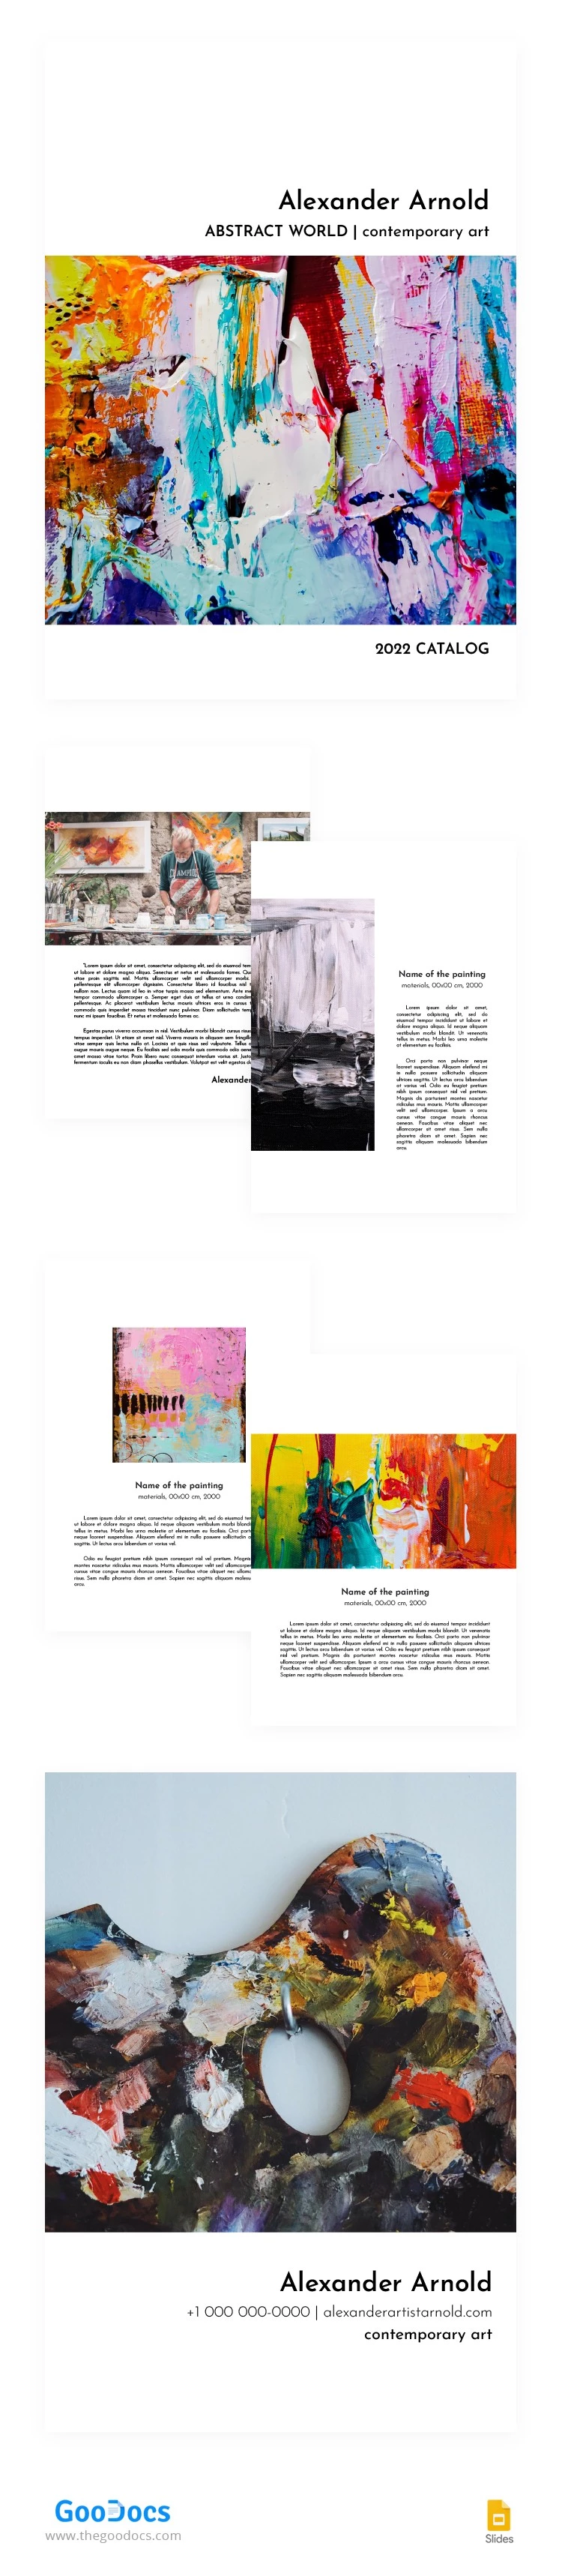 Catálogo de Artista Abstrato - free Google Docs Template - 10062785